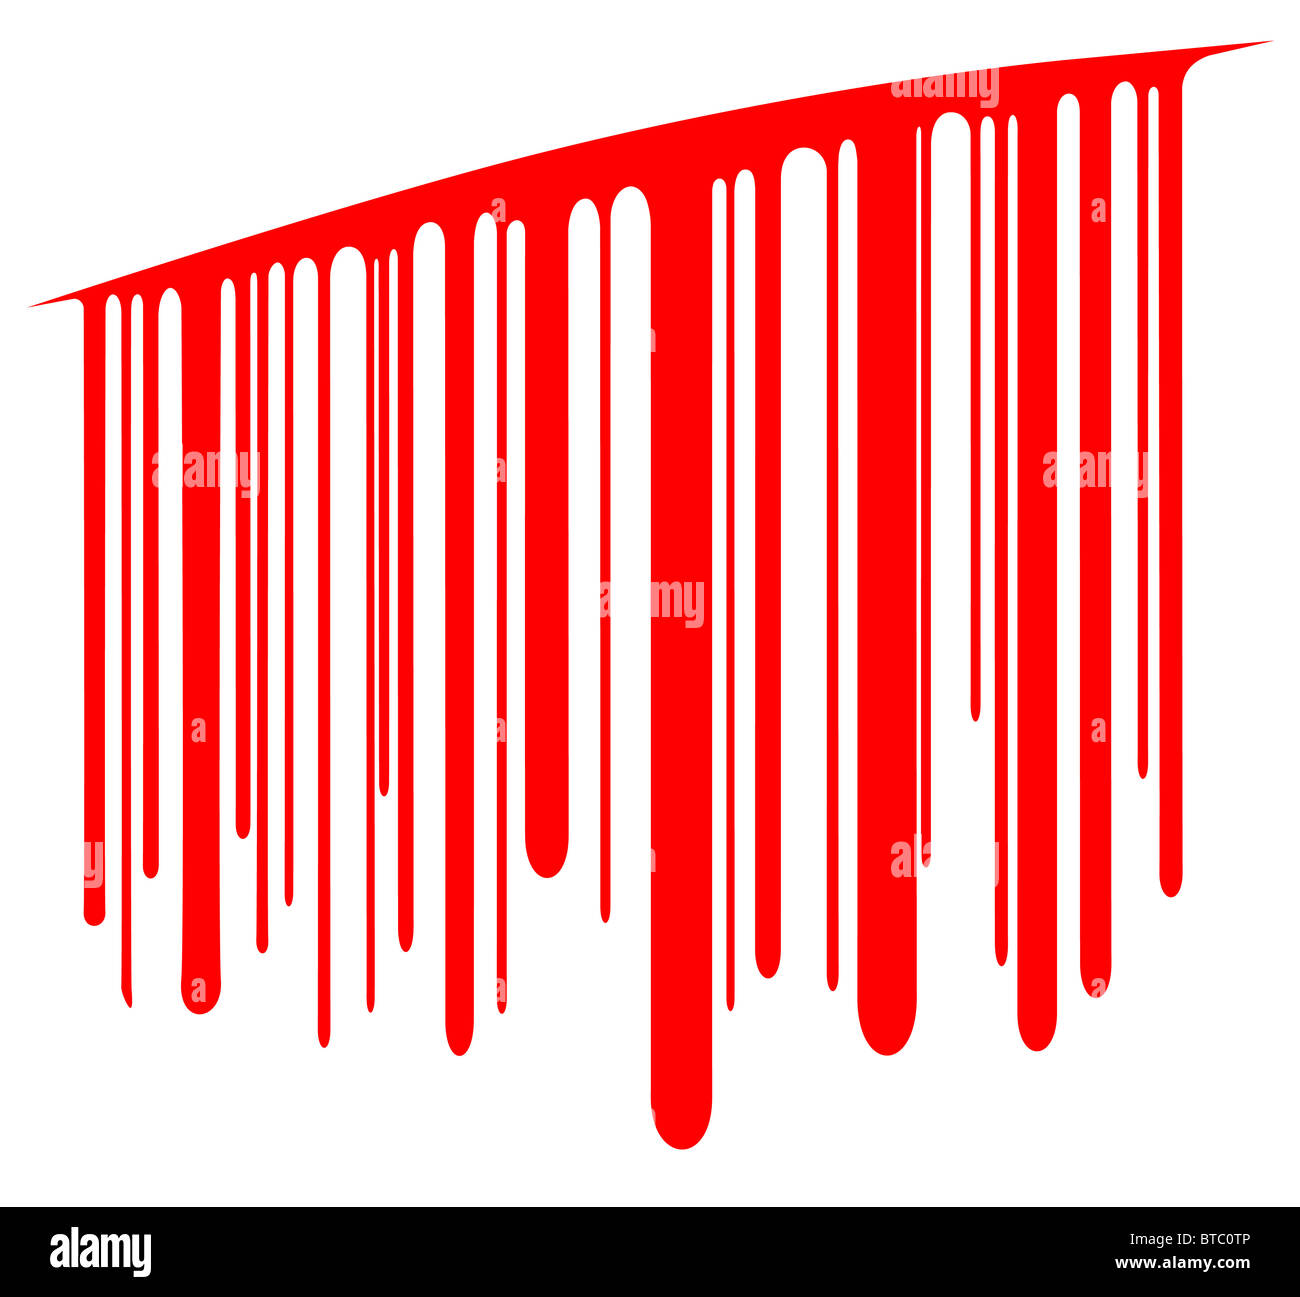 Gestaltungselement der Blut tropft aus einem Schnitt als Barcode-illustriert Stockfoto